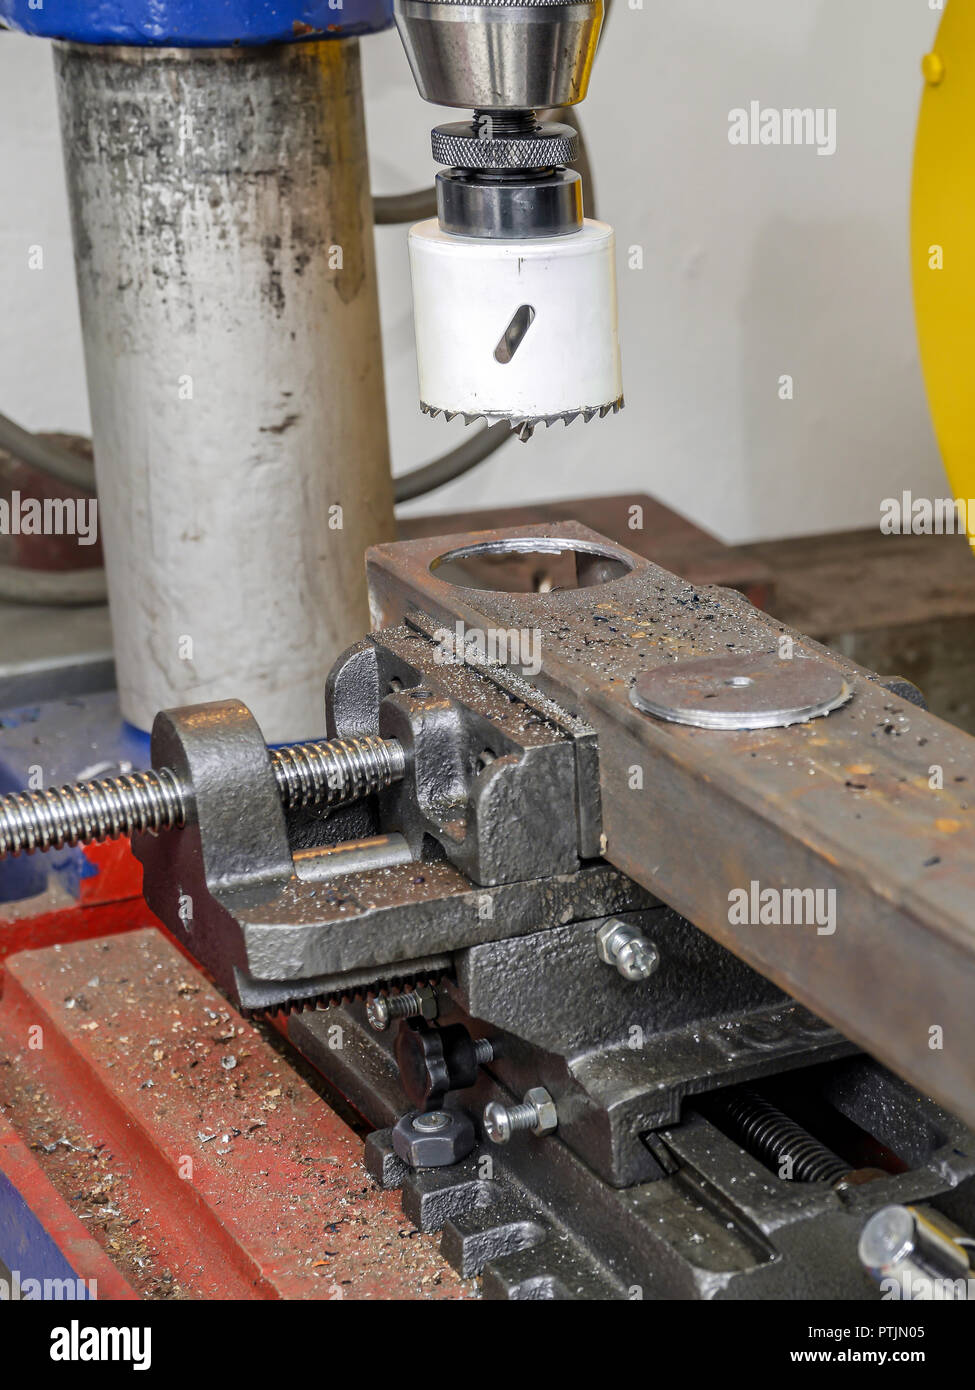 Vista dettagliata del fermo macchina perforatrice con attaccato il foro di metallo taglierina foro di taglio in carpenteria metallica Foto Stock